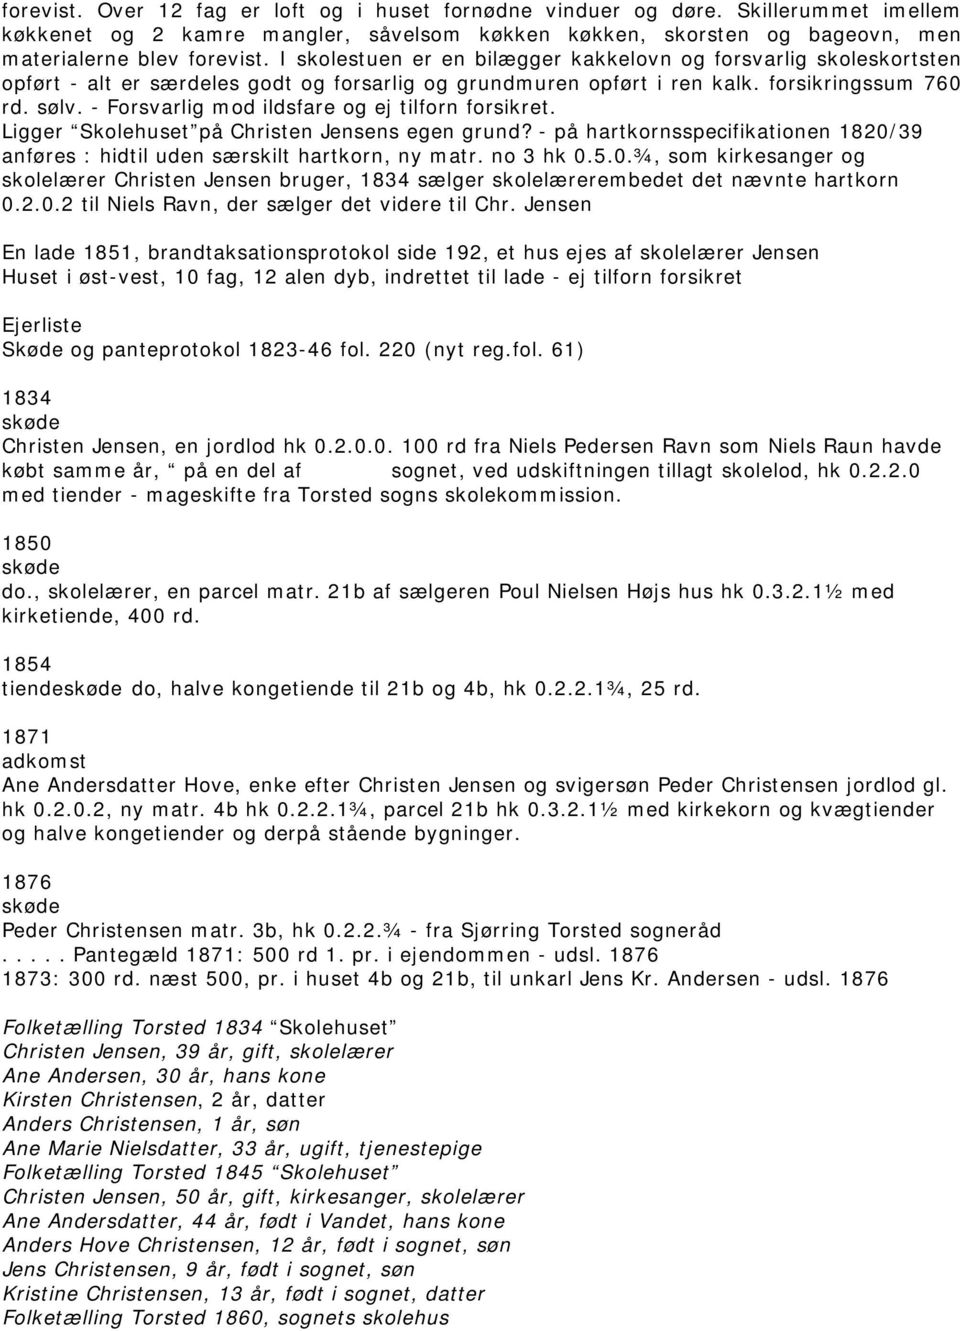 Komplet oversigt over Torsted-ejendommenes historie - PDF Gratis download